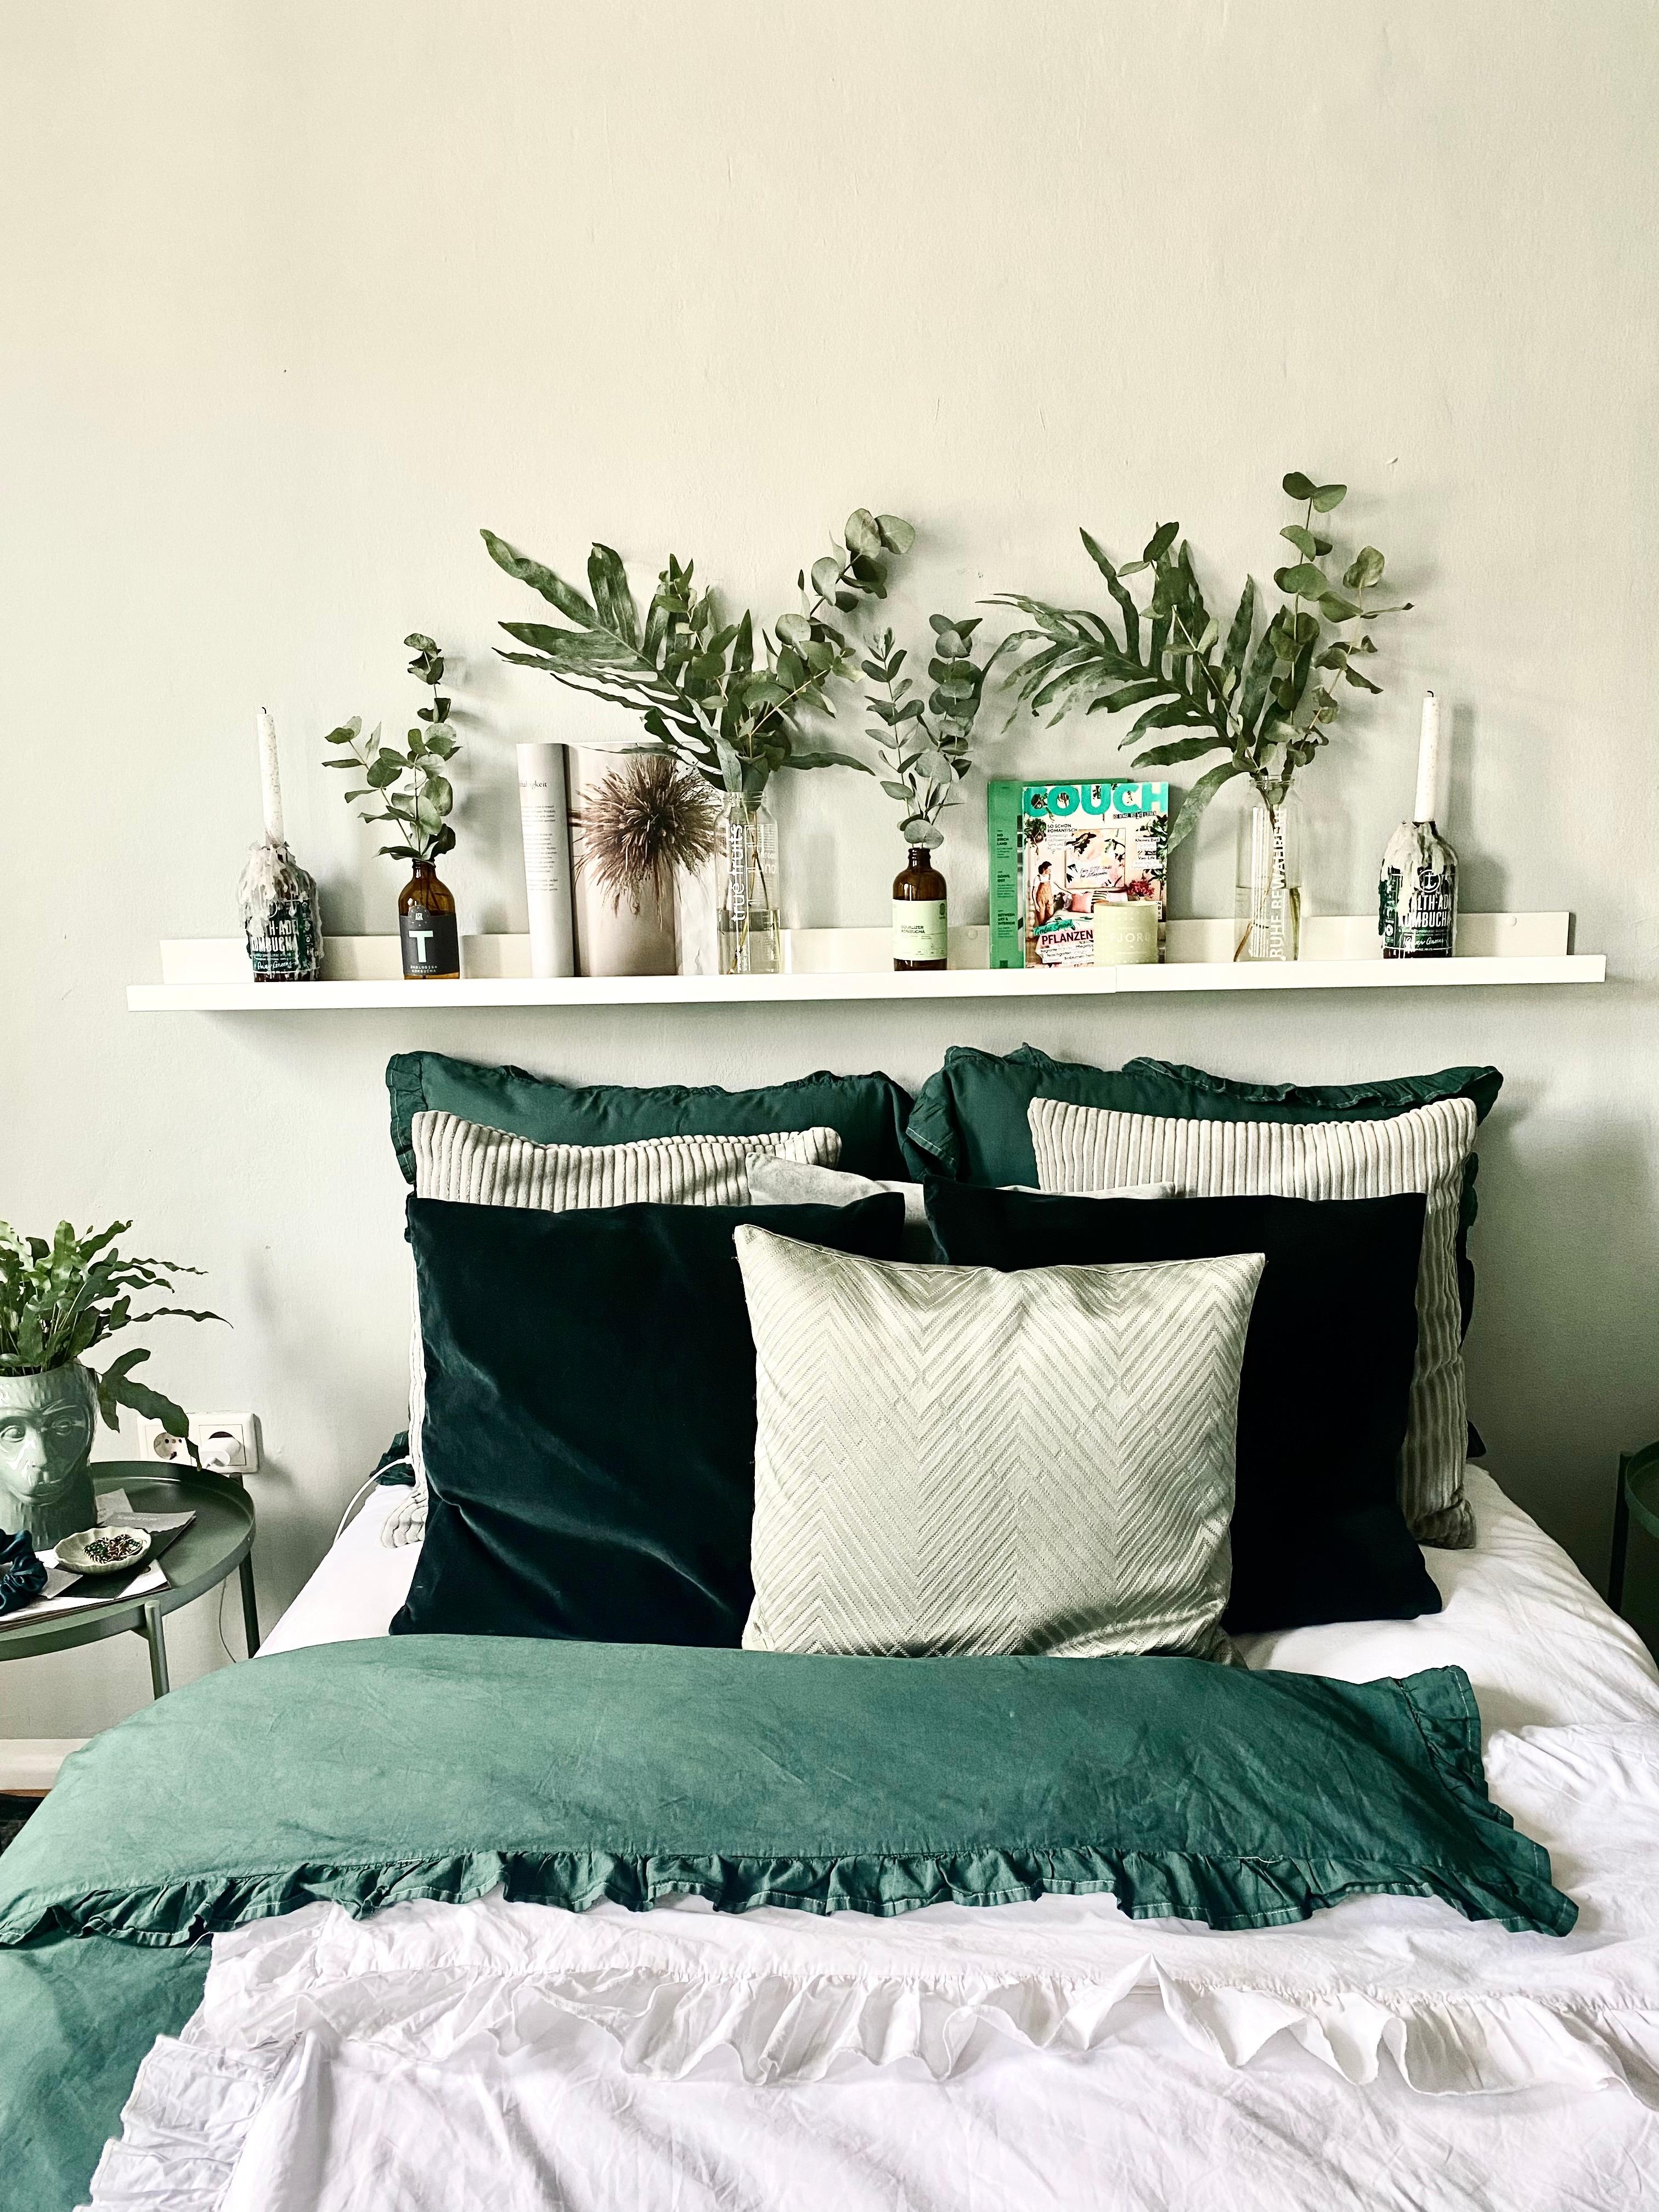 #pflanzenliebe #couchmag #greengreengreen #norainnoflowers 